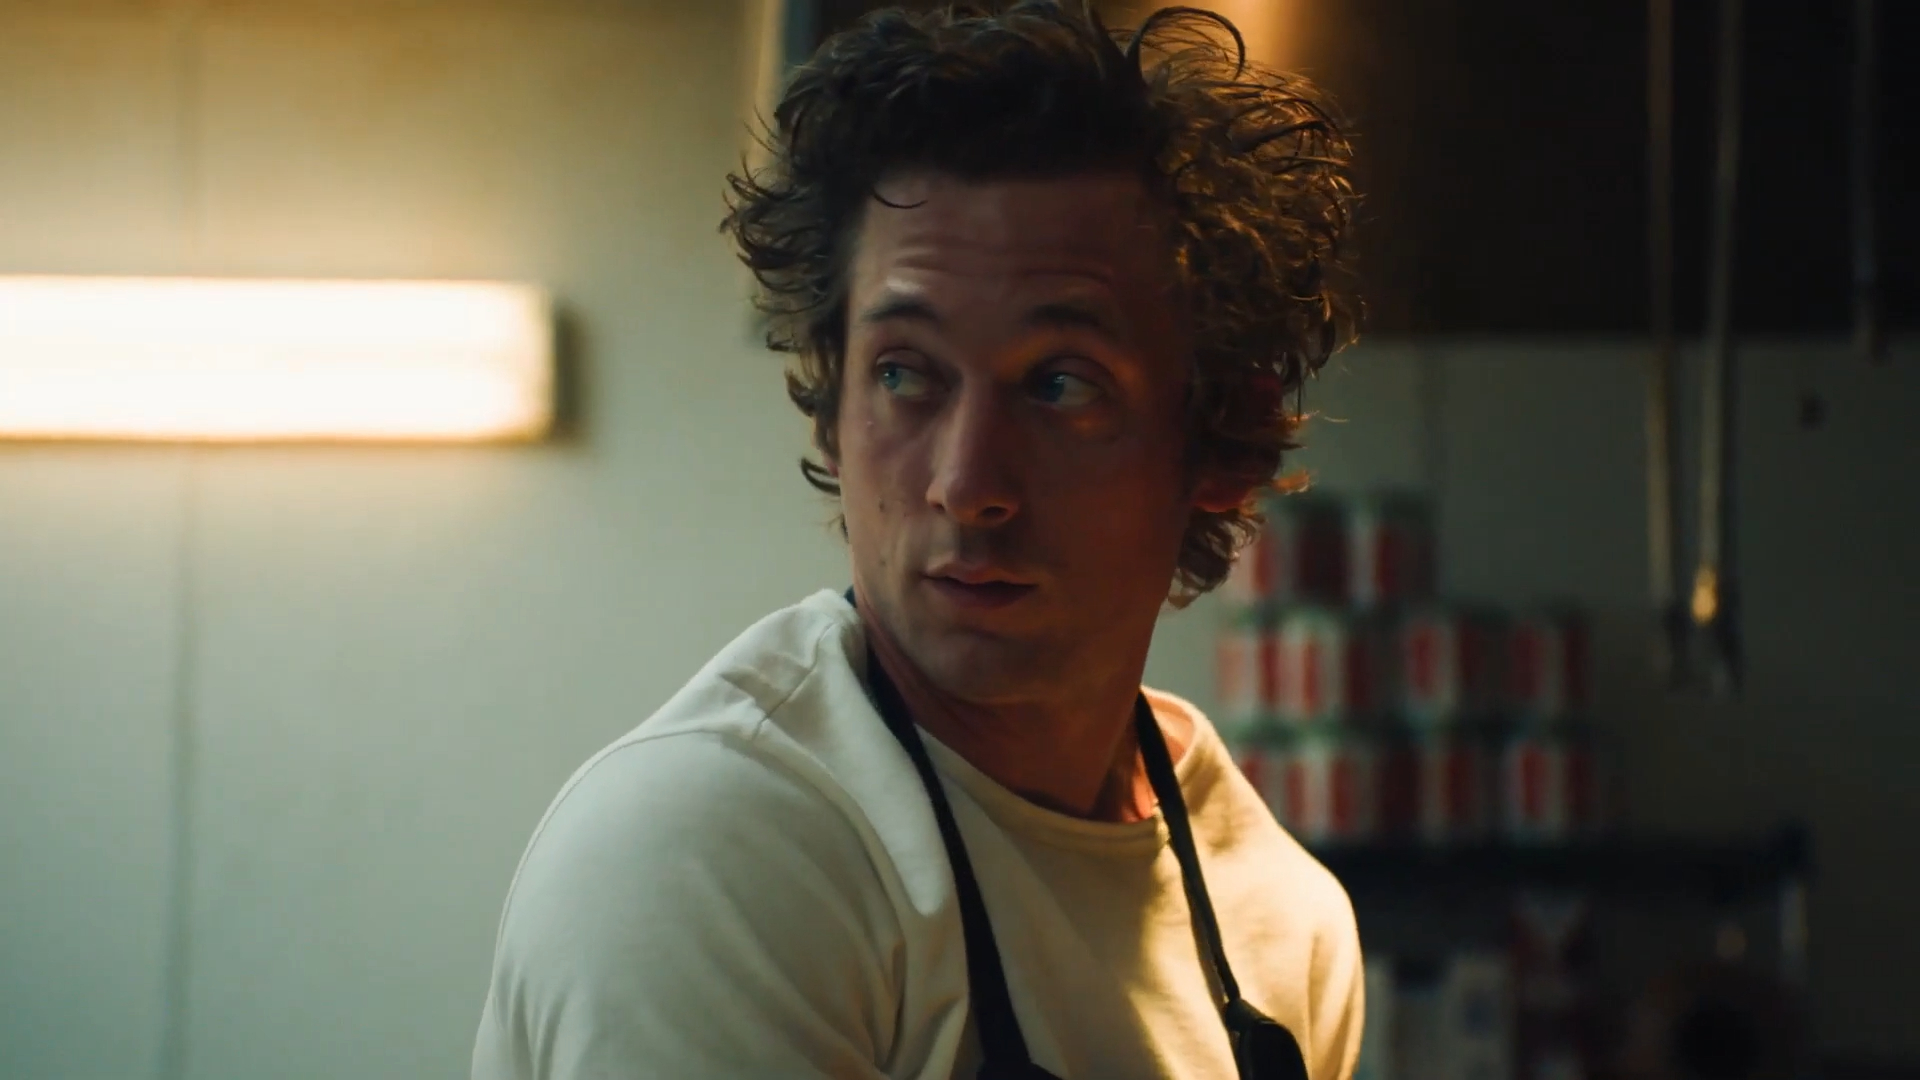 جرمی آلن وایت در فیلم The Bear به بررسی رستوران های پنج ستاره از آشپزخانه کوچکی در شیکاگو می پردازد.